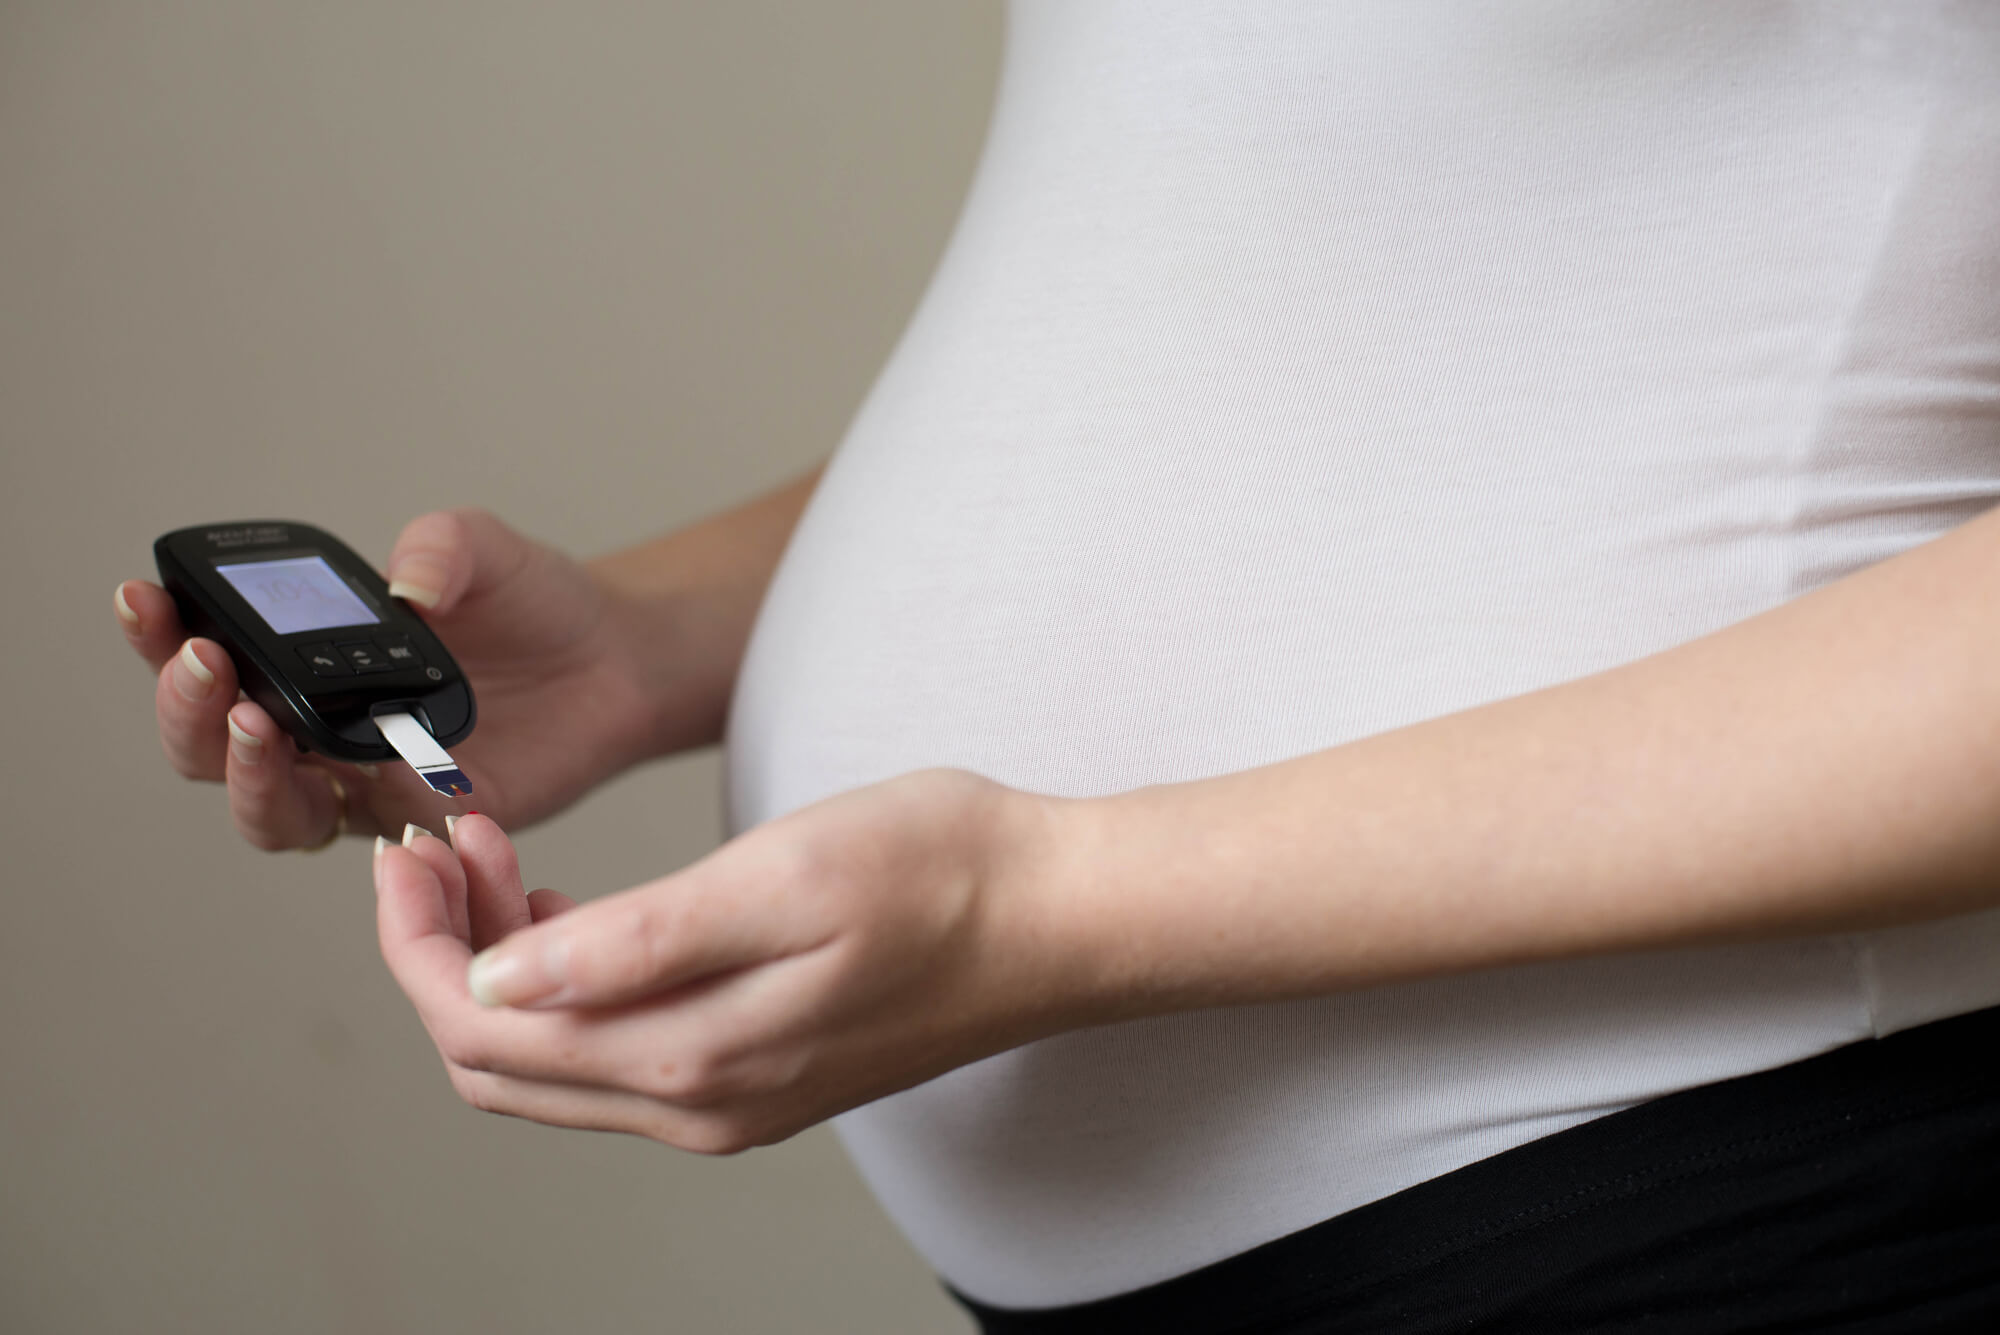 סוכרת בהריון - בדיקת העמסת סוכר - ארגון המיילדות בישראל